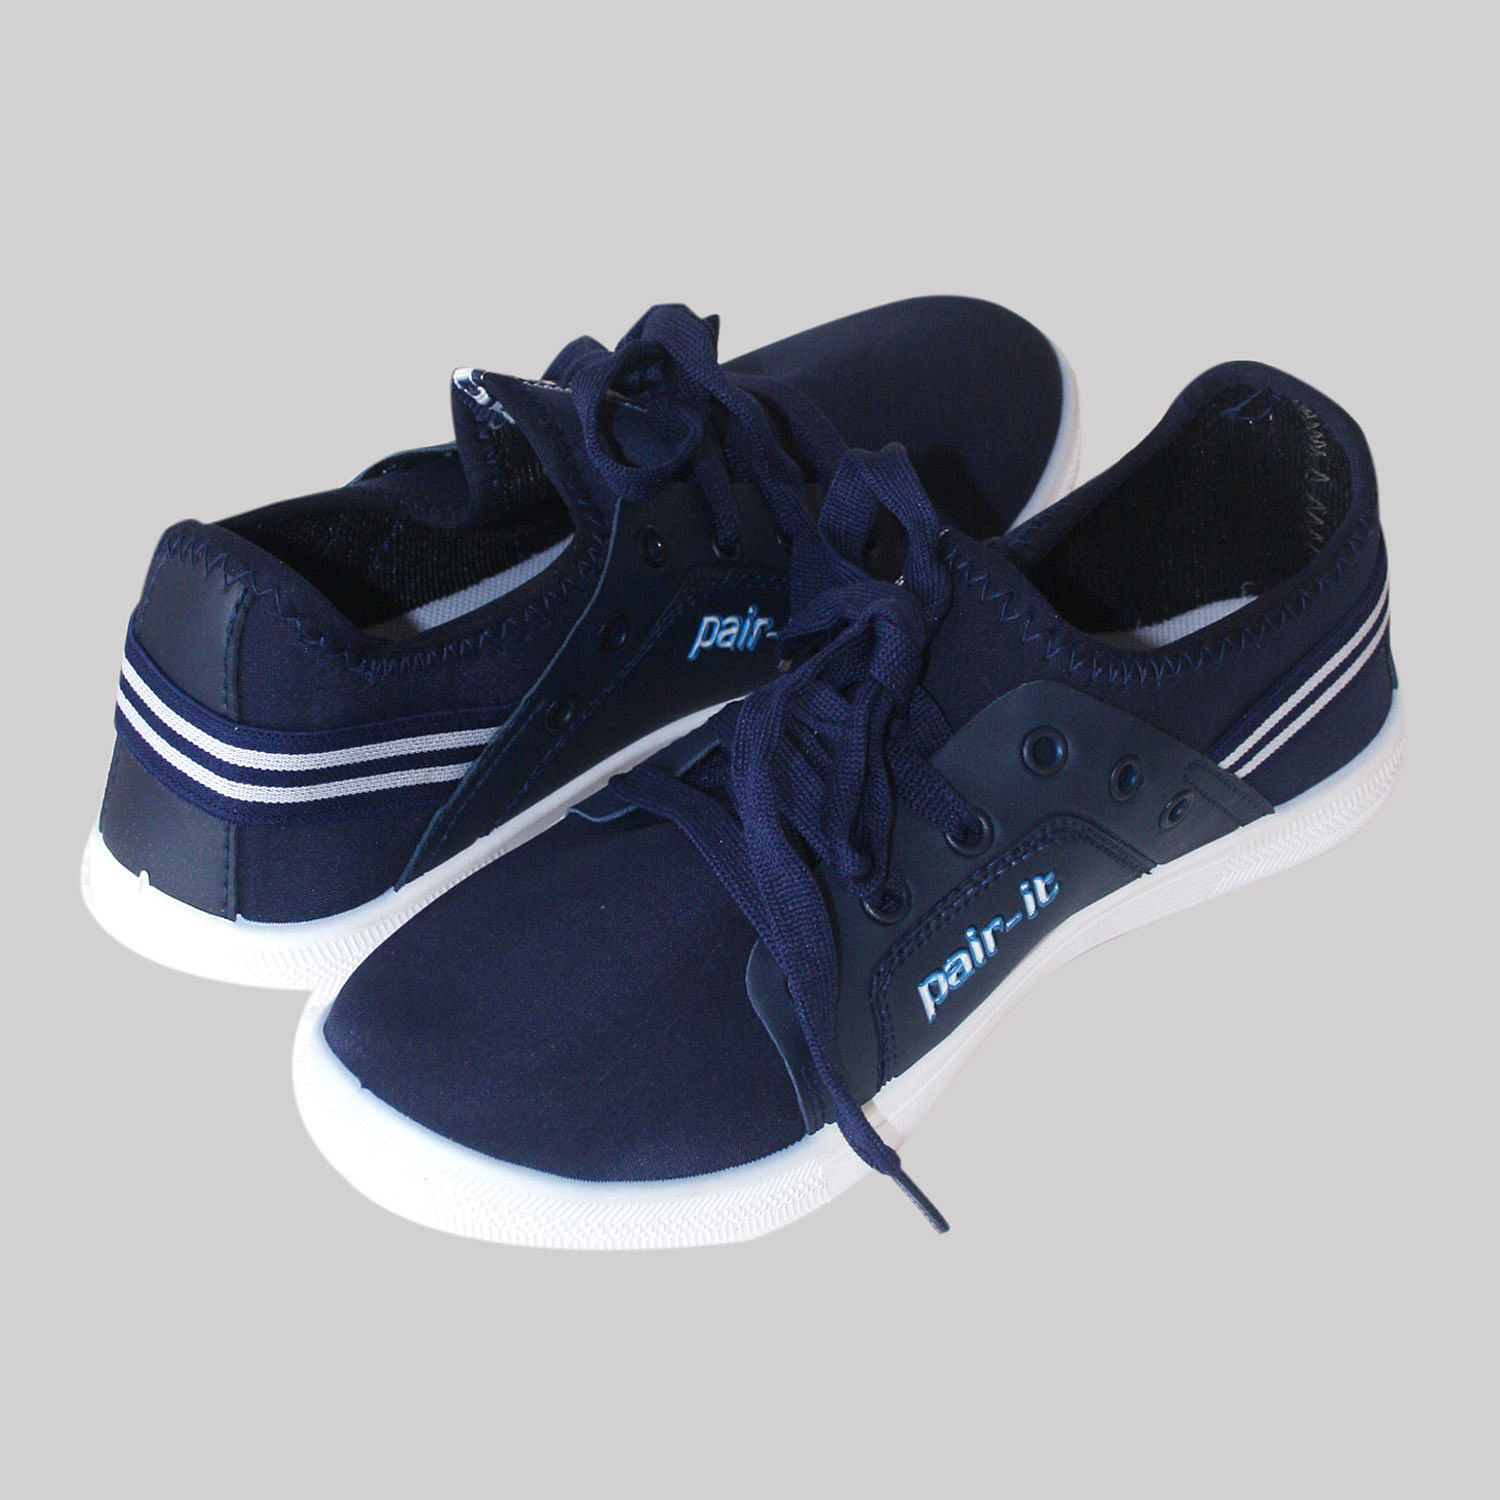 Pair-it Men's PVC Casual Shoe-DP-Casual006-Blue